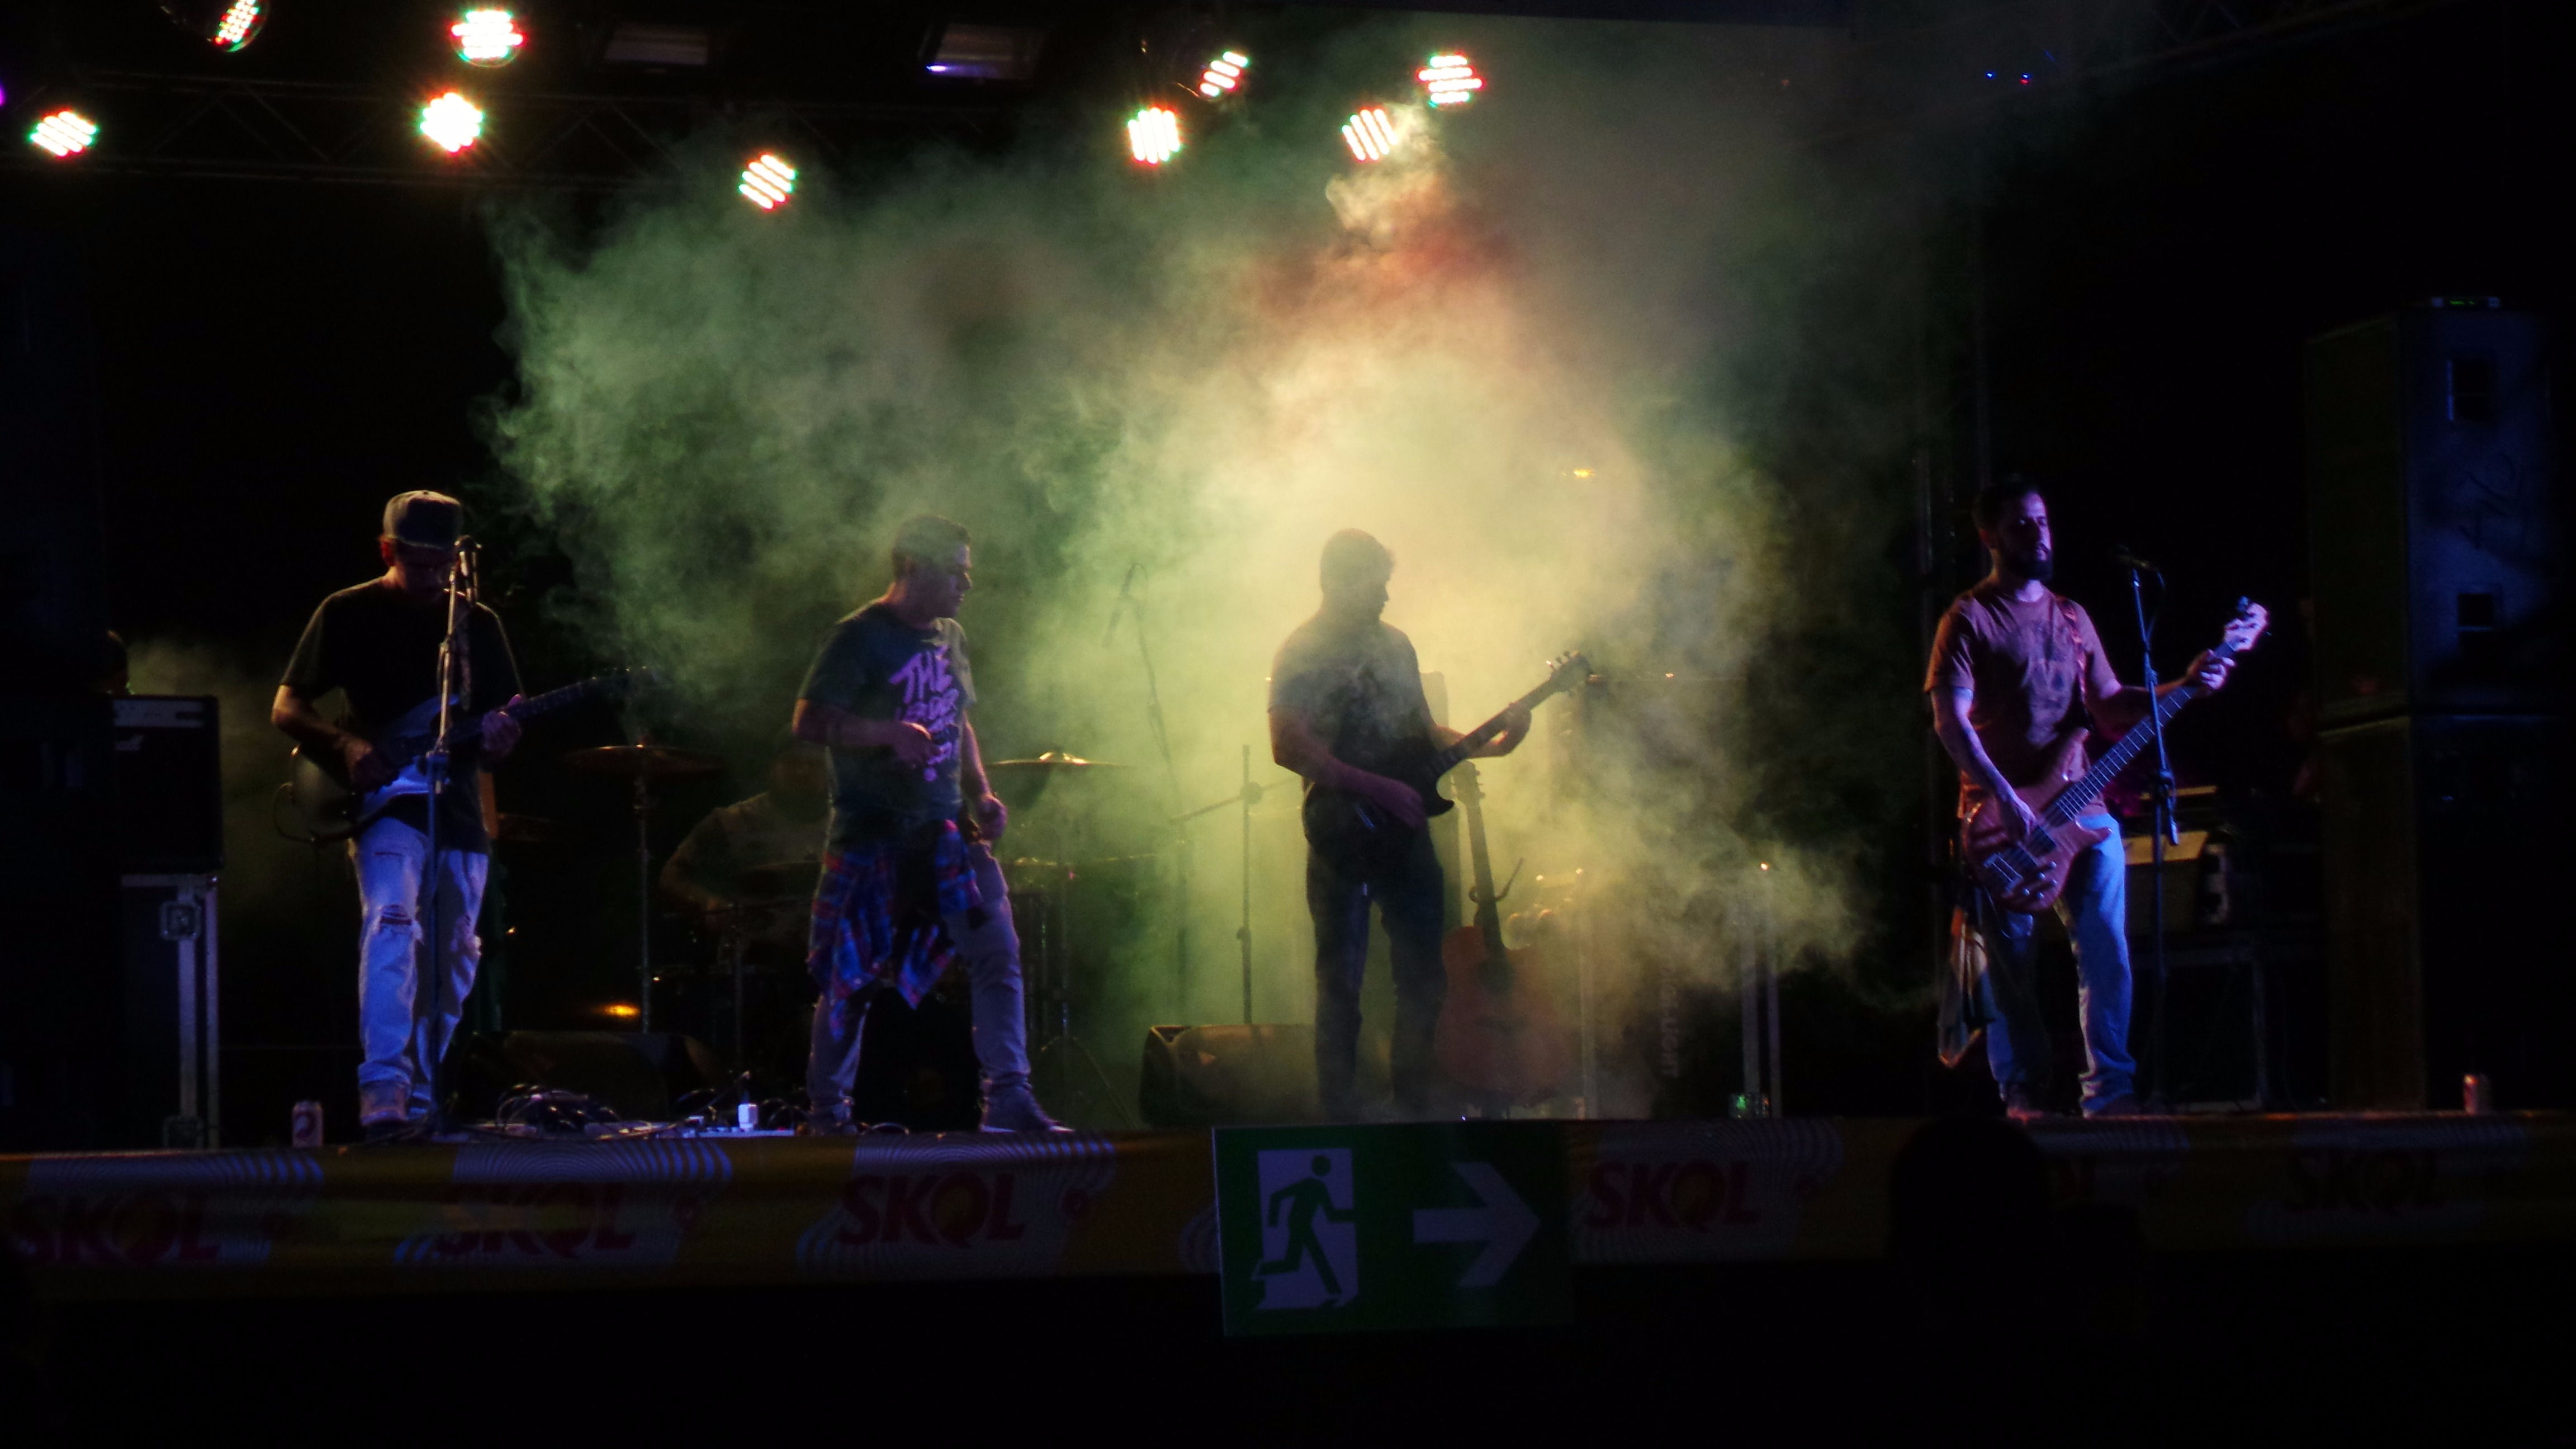 
A banda Mãe Joana, de Três Lagoas animou o evento no sábado, seguido da Banda Rivers, de Campo Grande (Foto: Ricardo Ojeda)
